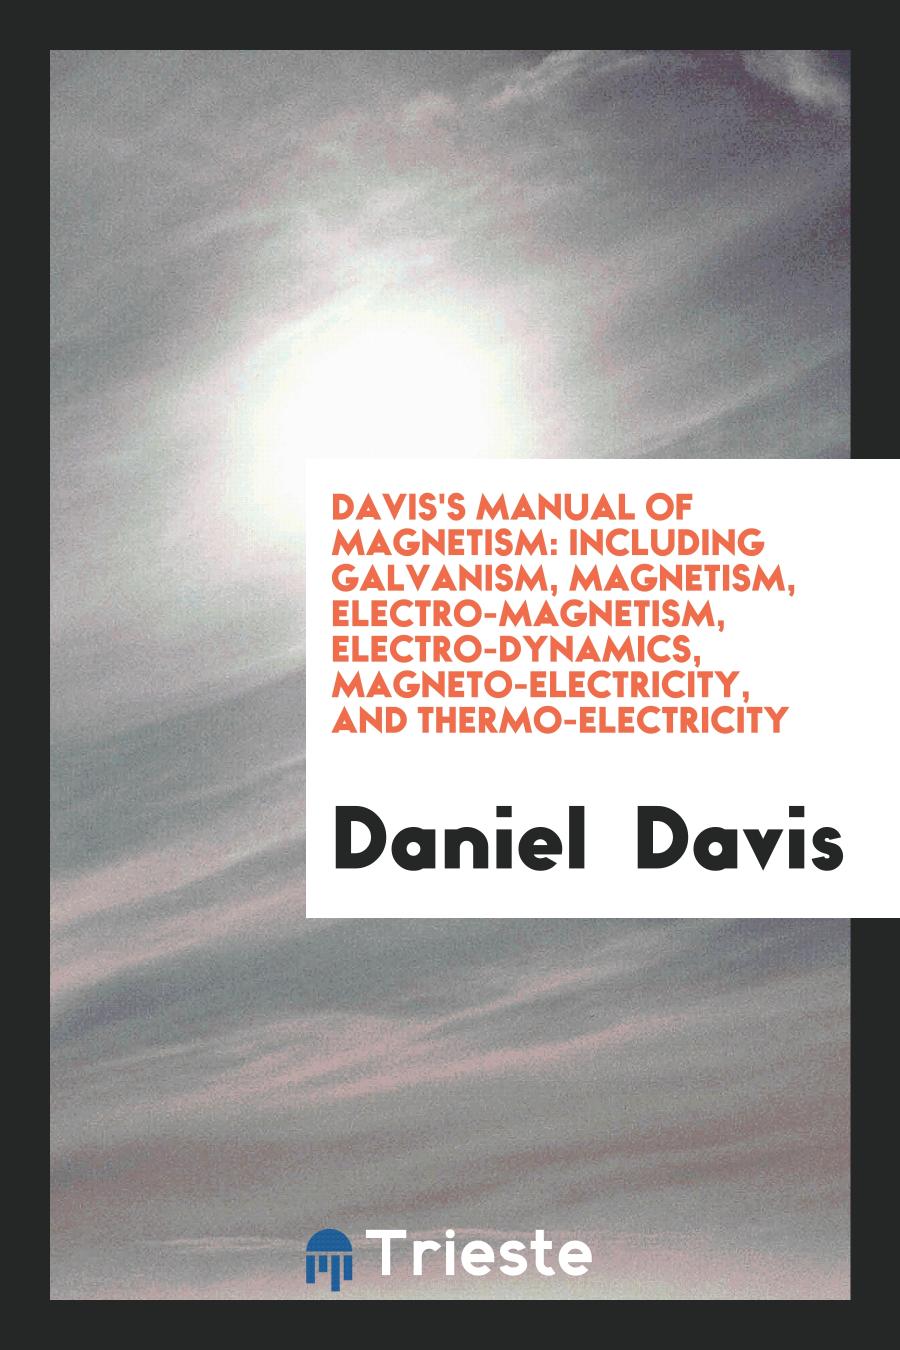 Davis's Manual of Magnetism: Including Galvanism, Magnetism, Electro-Magnetism, Electro-Dynamics, Magneto-Electricity, and Thermo-Electricity